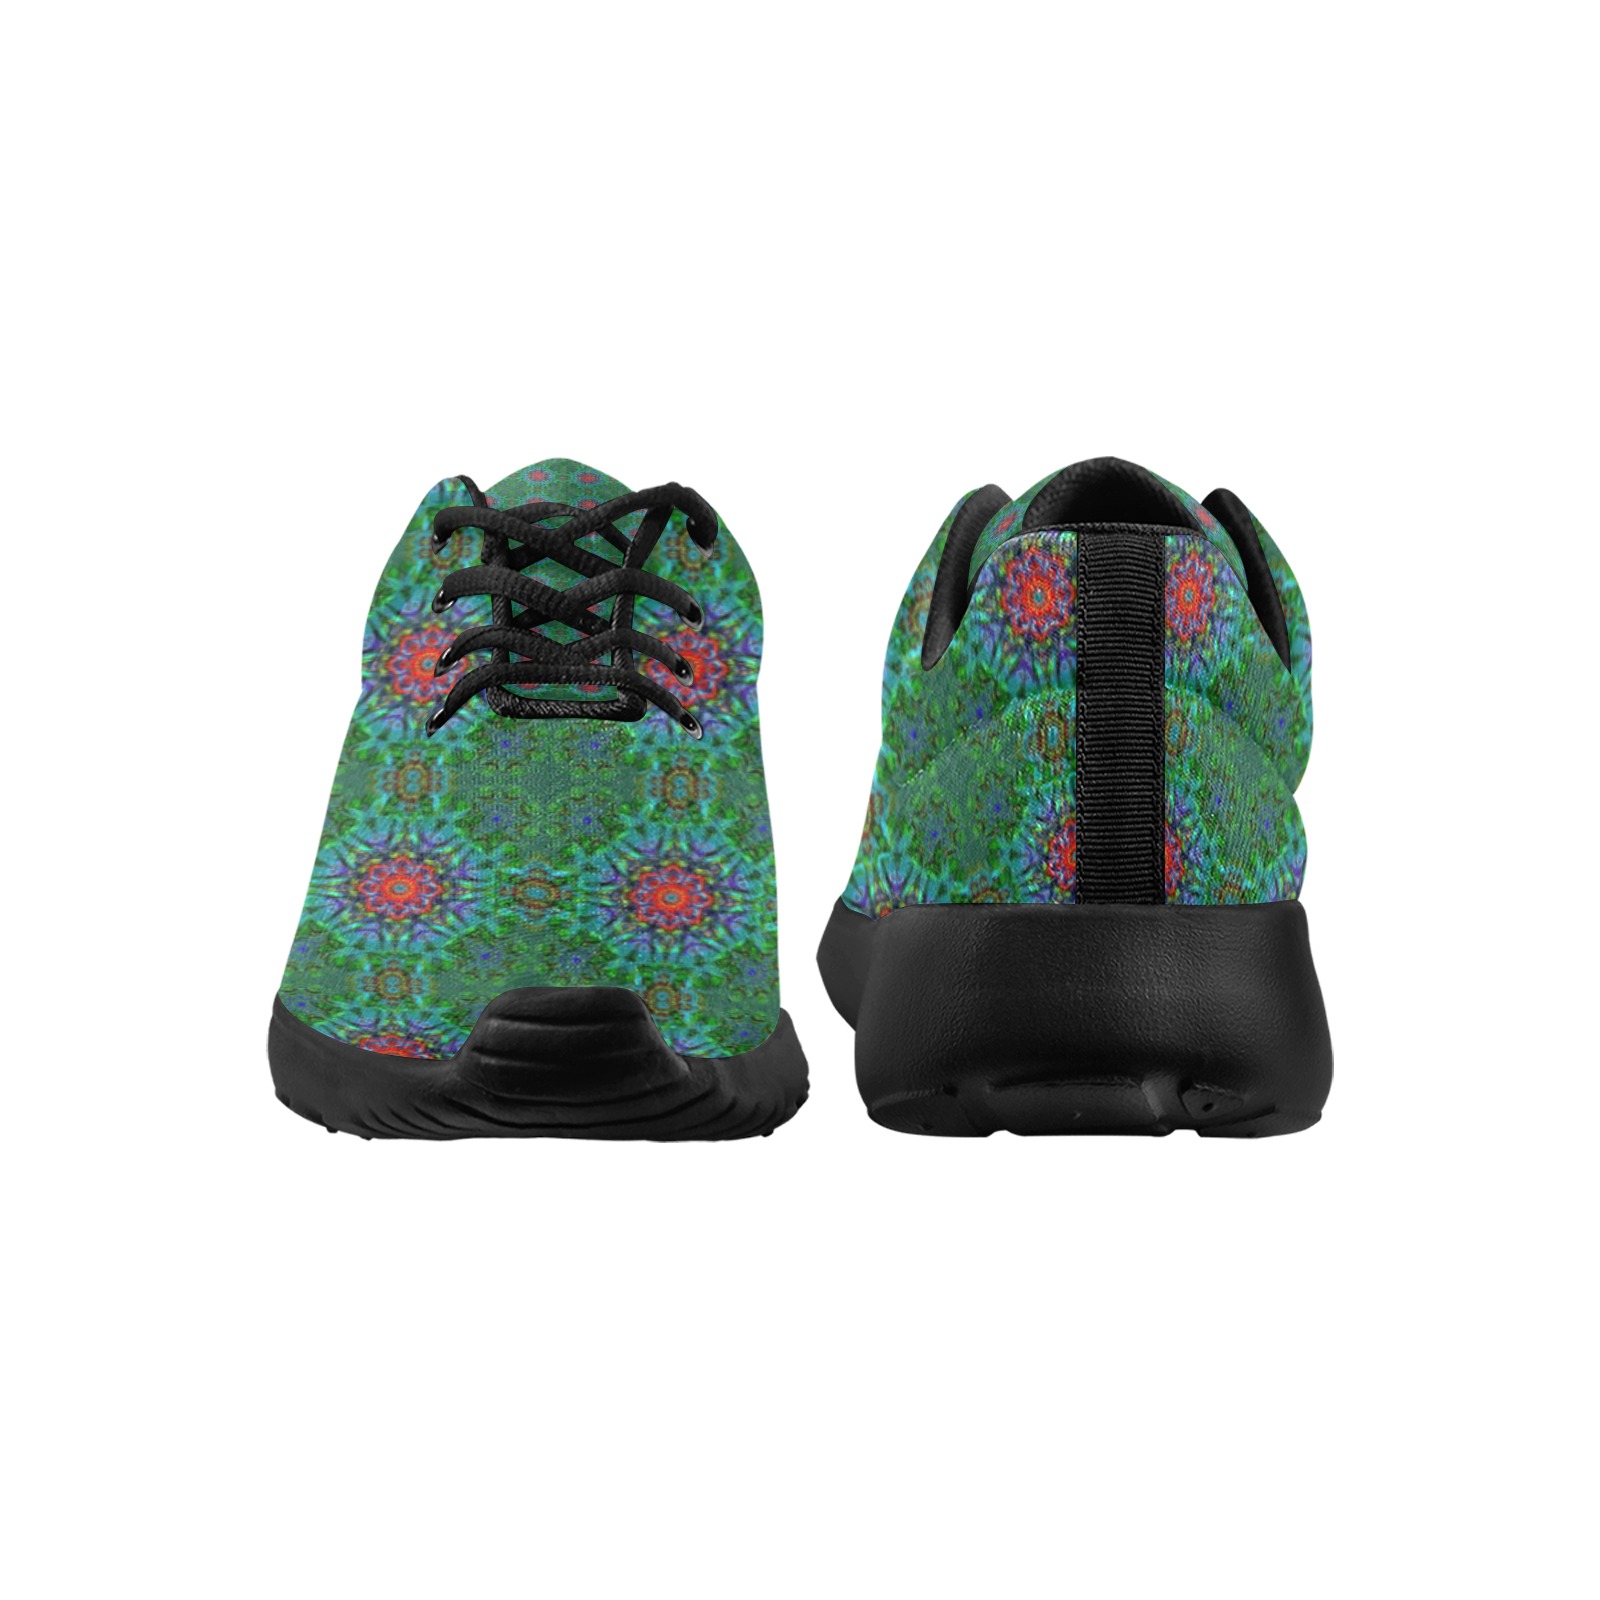 Confianza textile texture mandala pattern Men's Athletic Shoes (Model 0200)